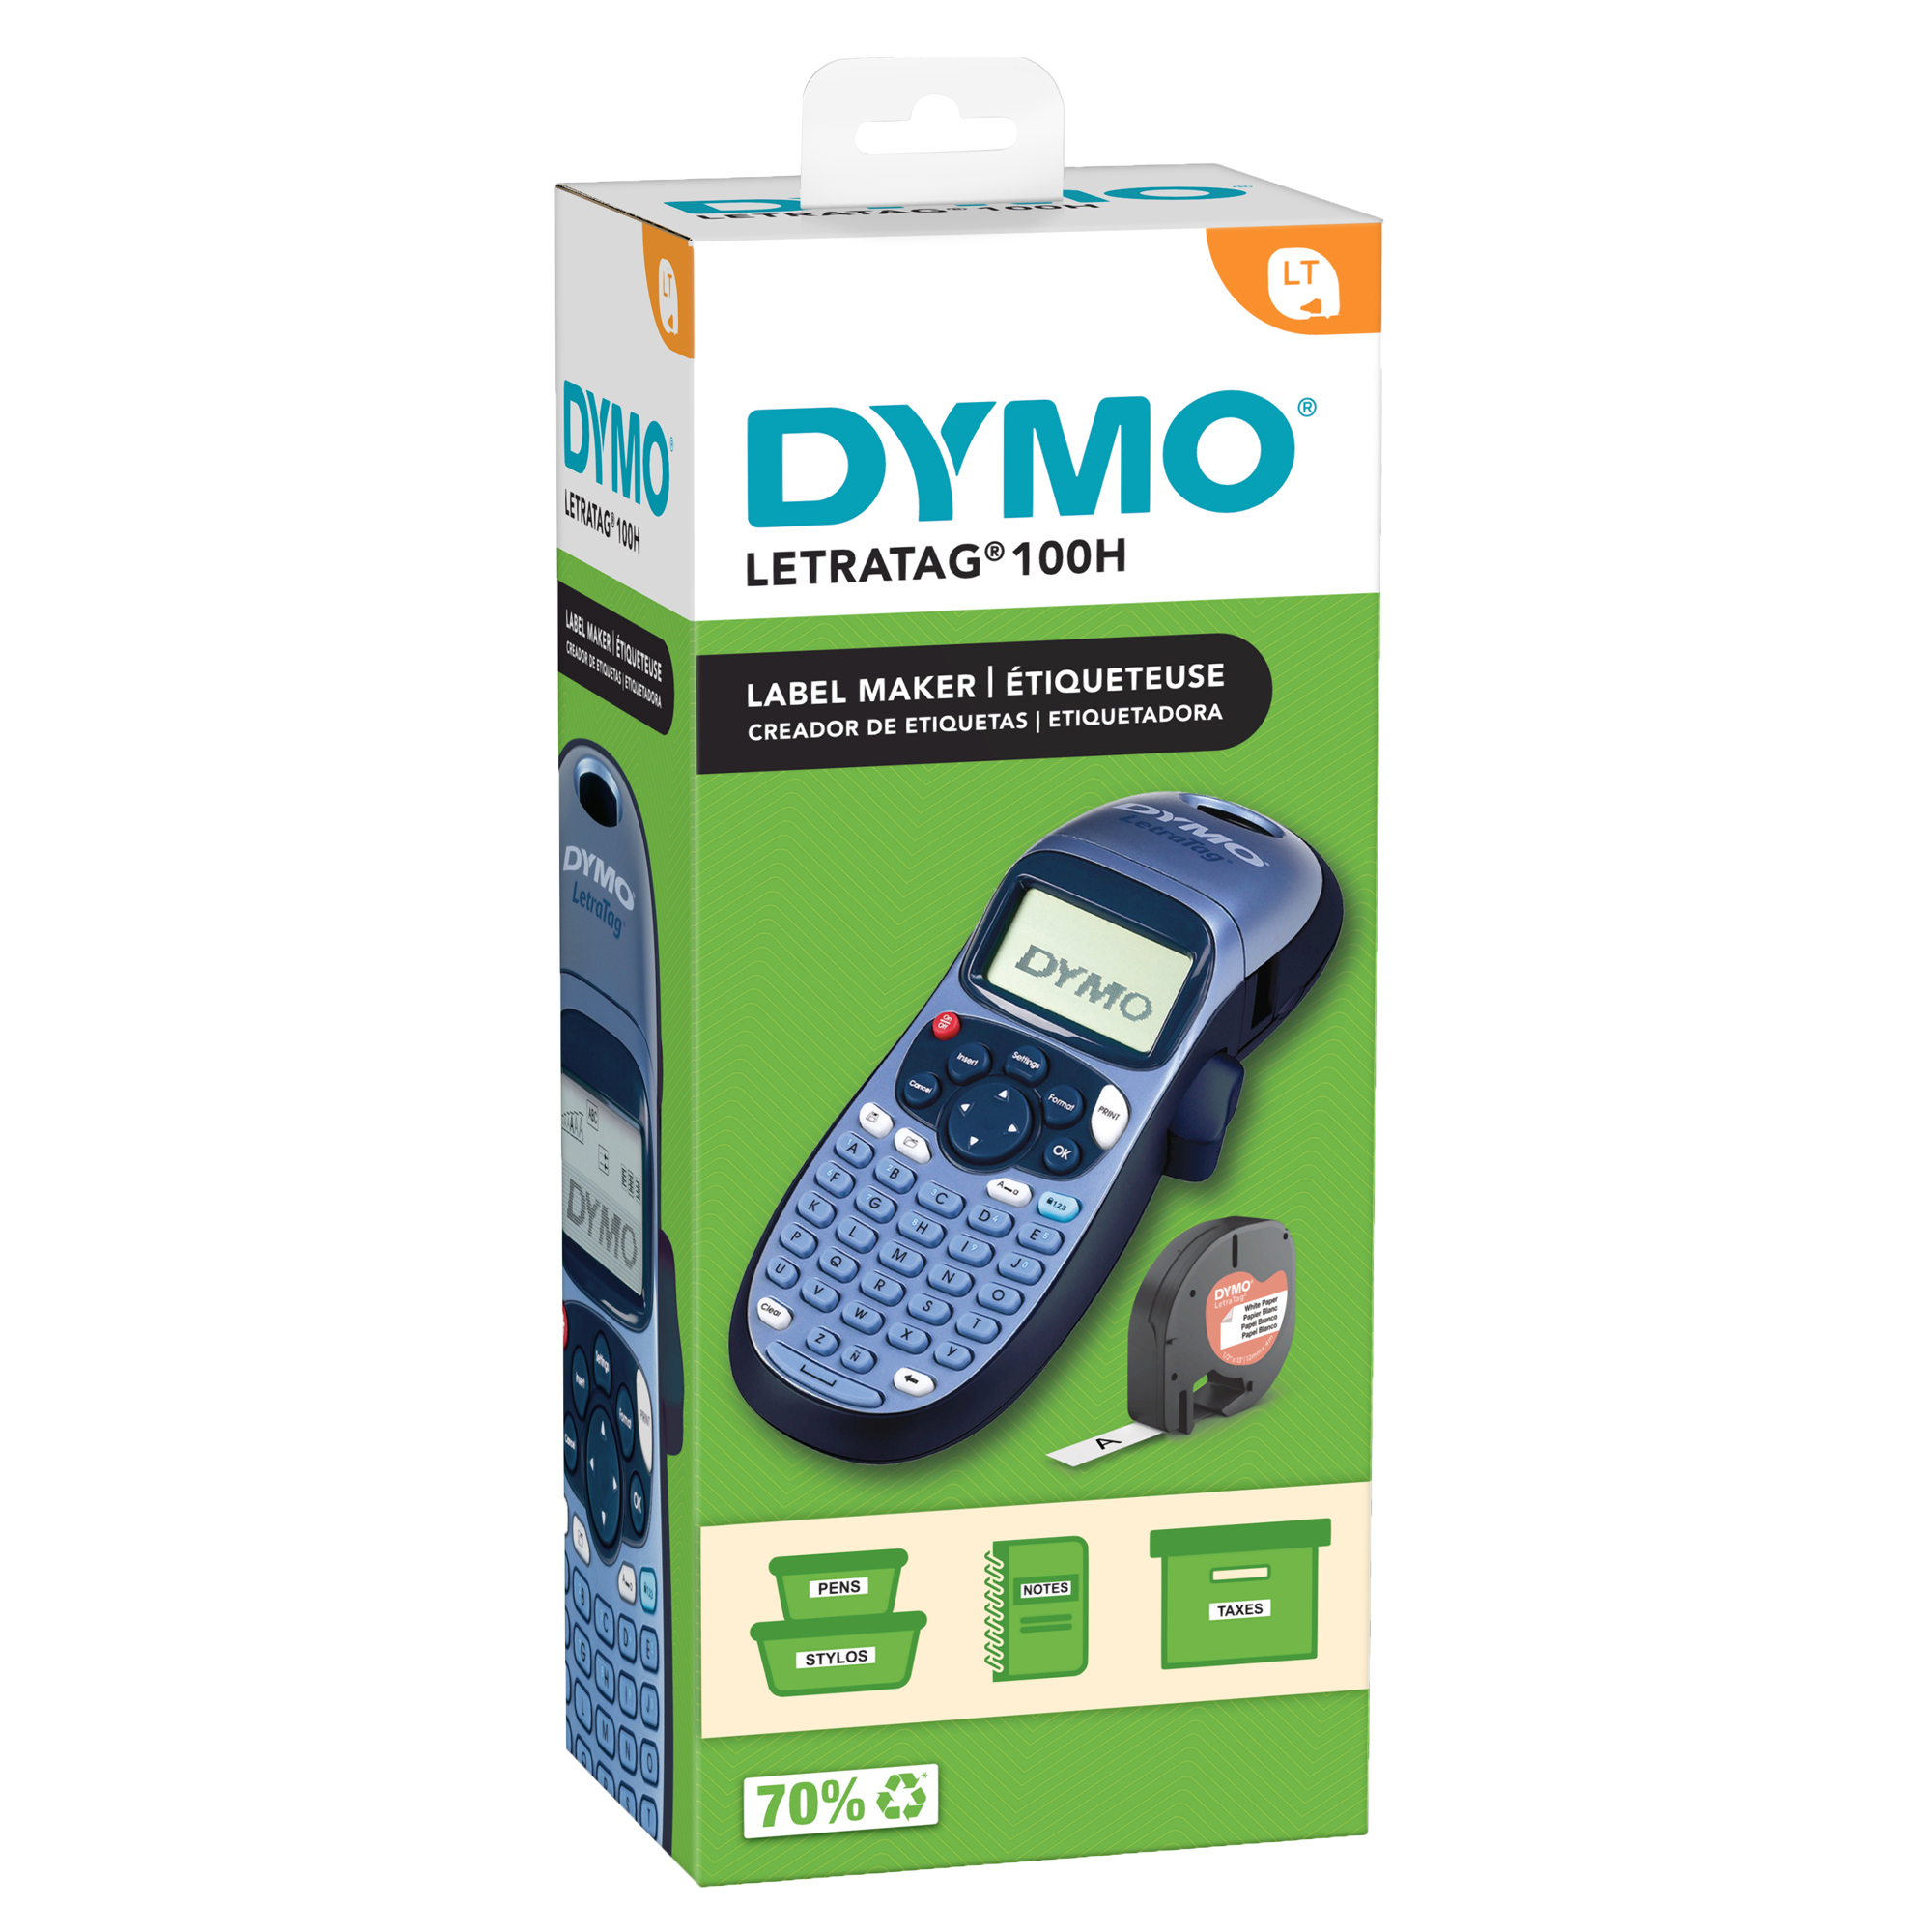 Etichettatrice LetraTag LT-100H - Dymo